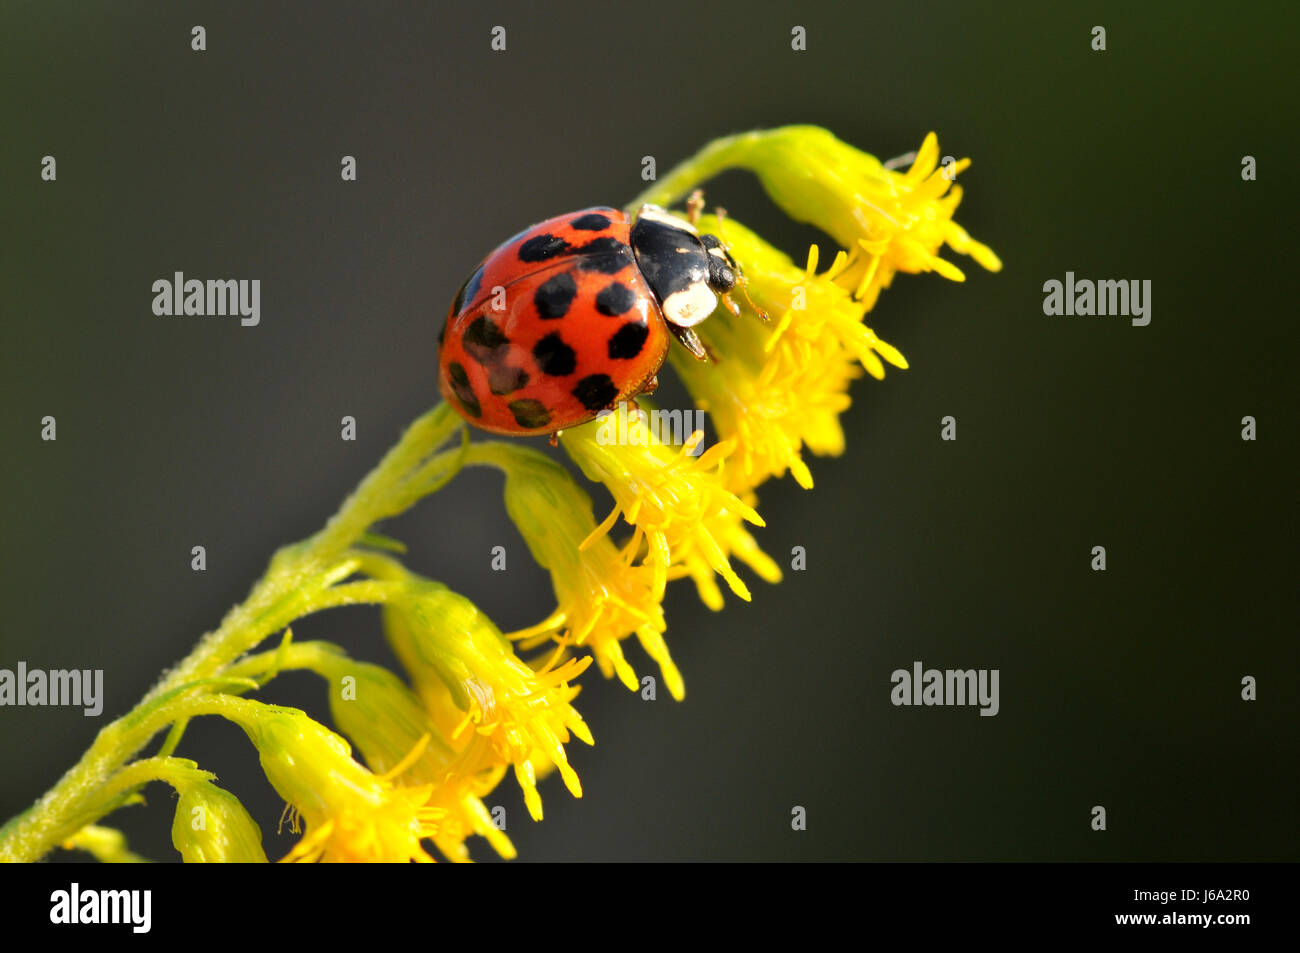 bloom blossom flourish flourishing beetle wing ladybug goldenrod flower plant Stock Photo